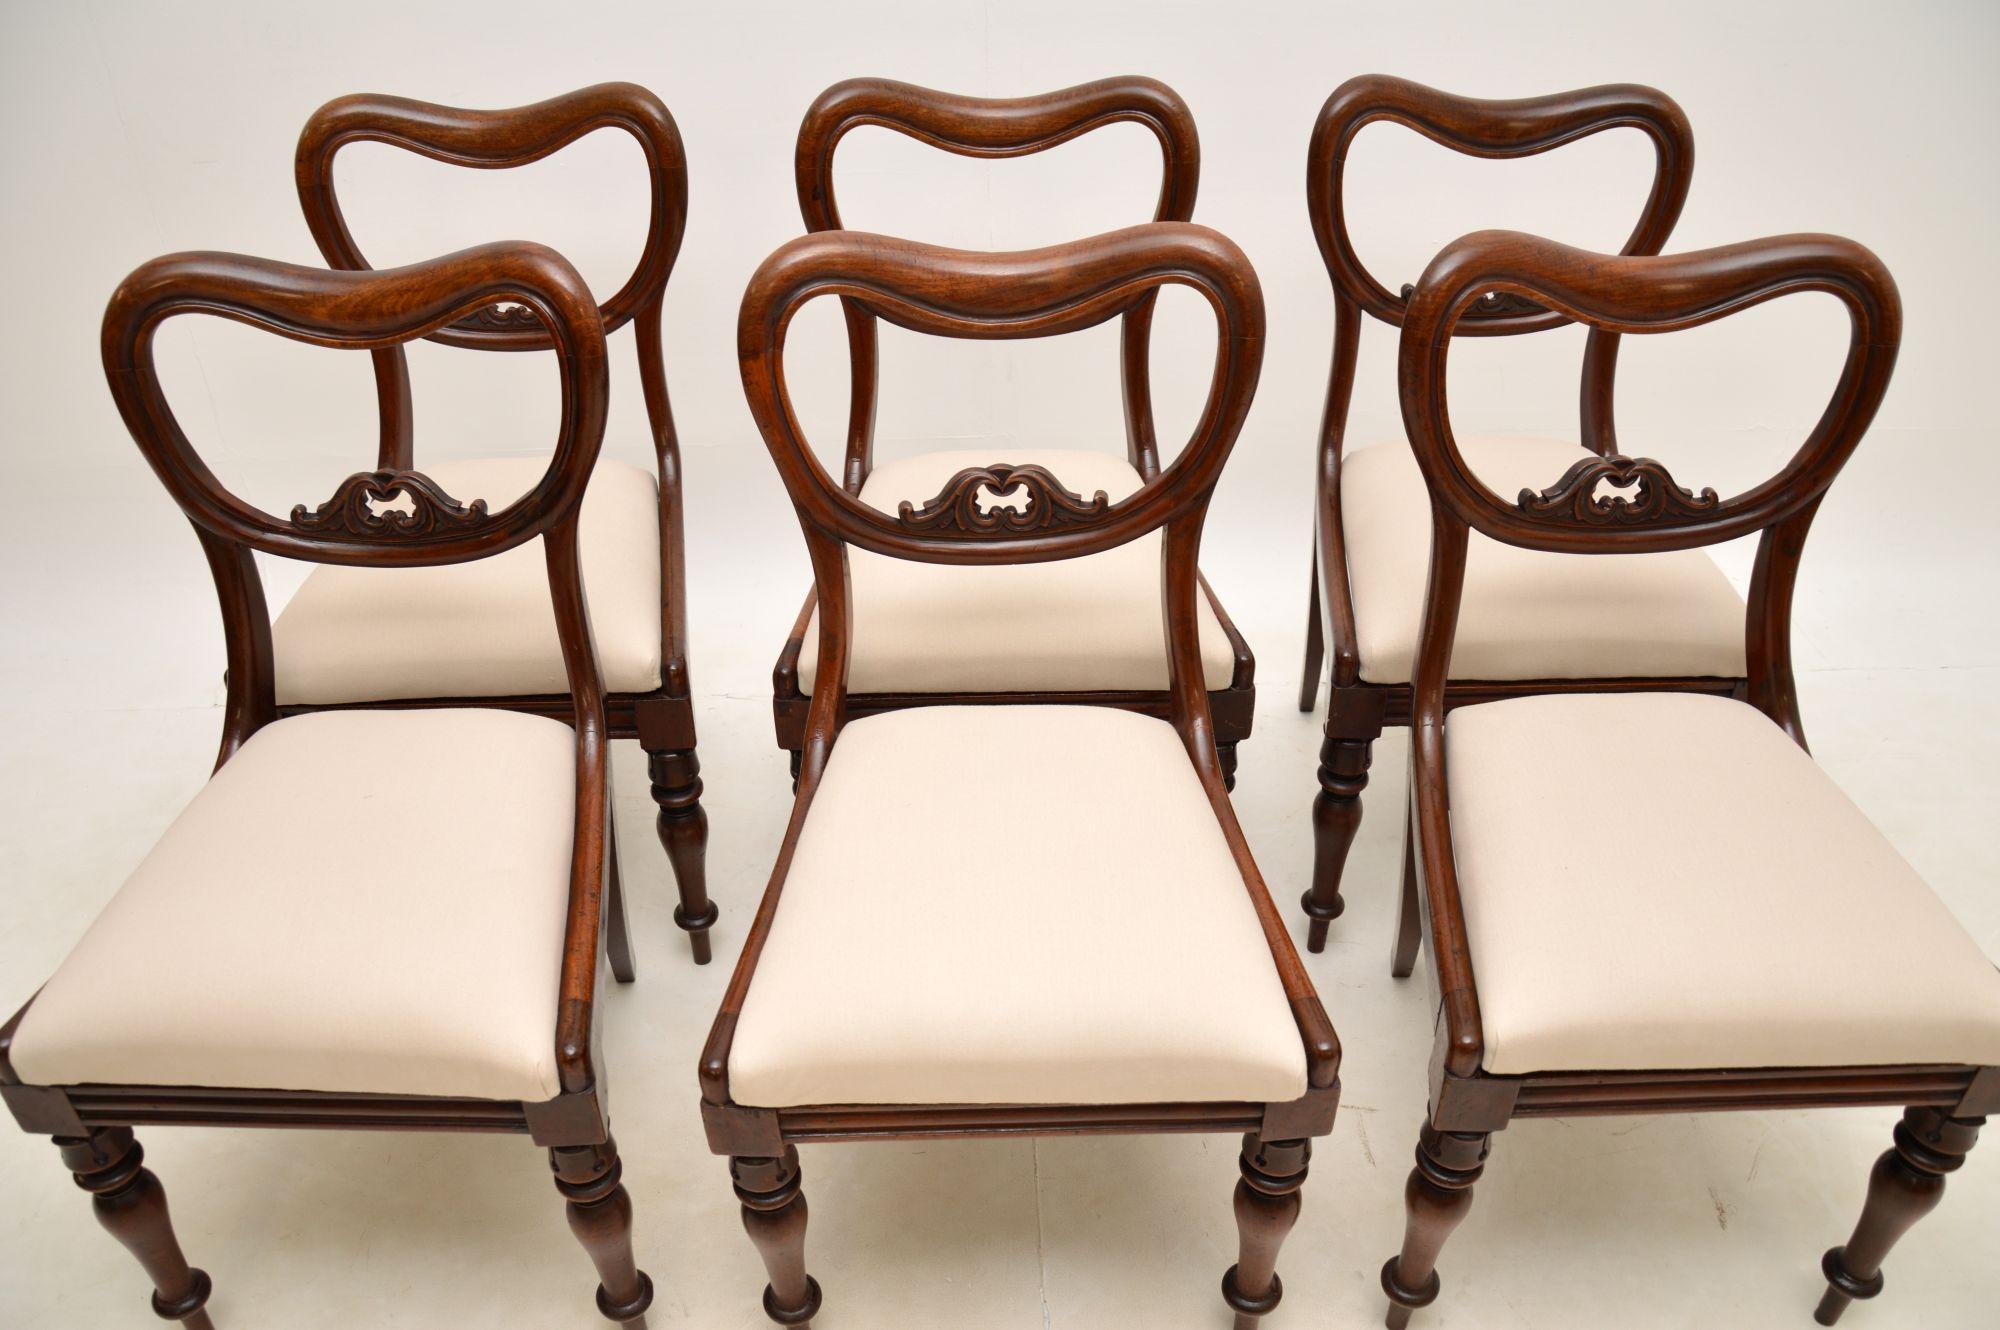 Ein atemberaubender Satz von sechs originalen Esszimmerstühlen aus der Zeit von William IV. Sie wurden in England hergestellt und stammen aus der Zeit um 1830-1840.

Die Qualität ist hervorragend, sie haben schön geschnitzte durchbrochene